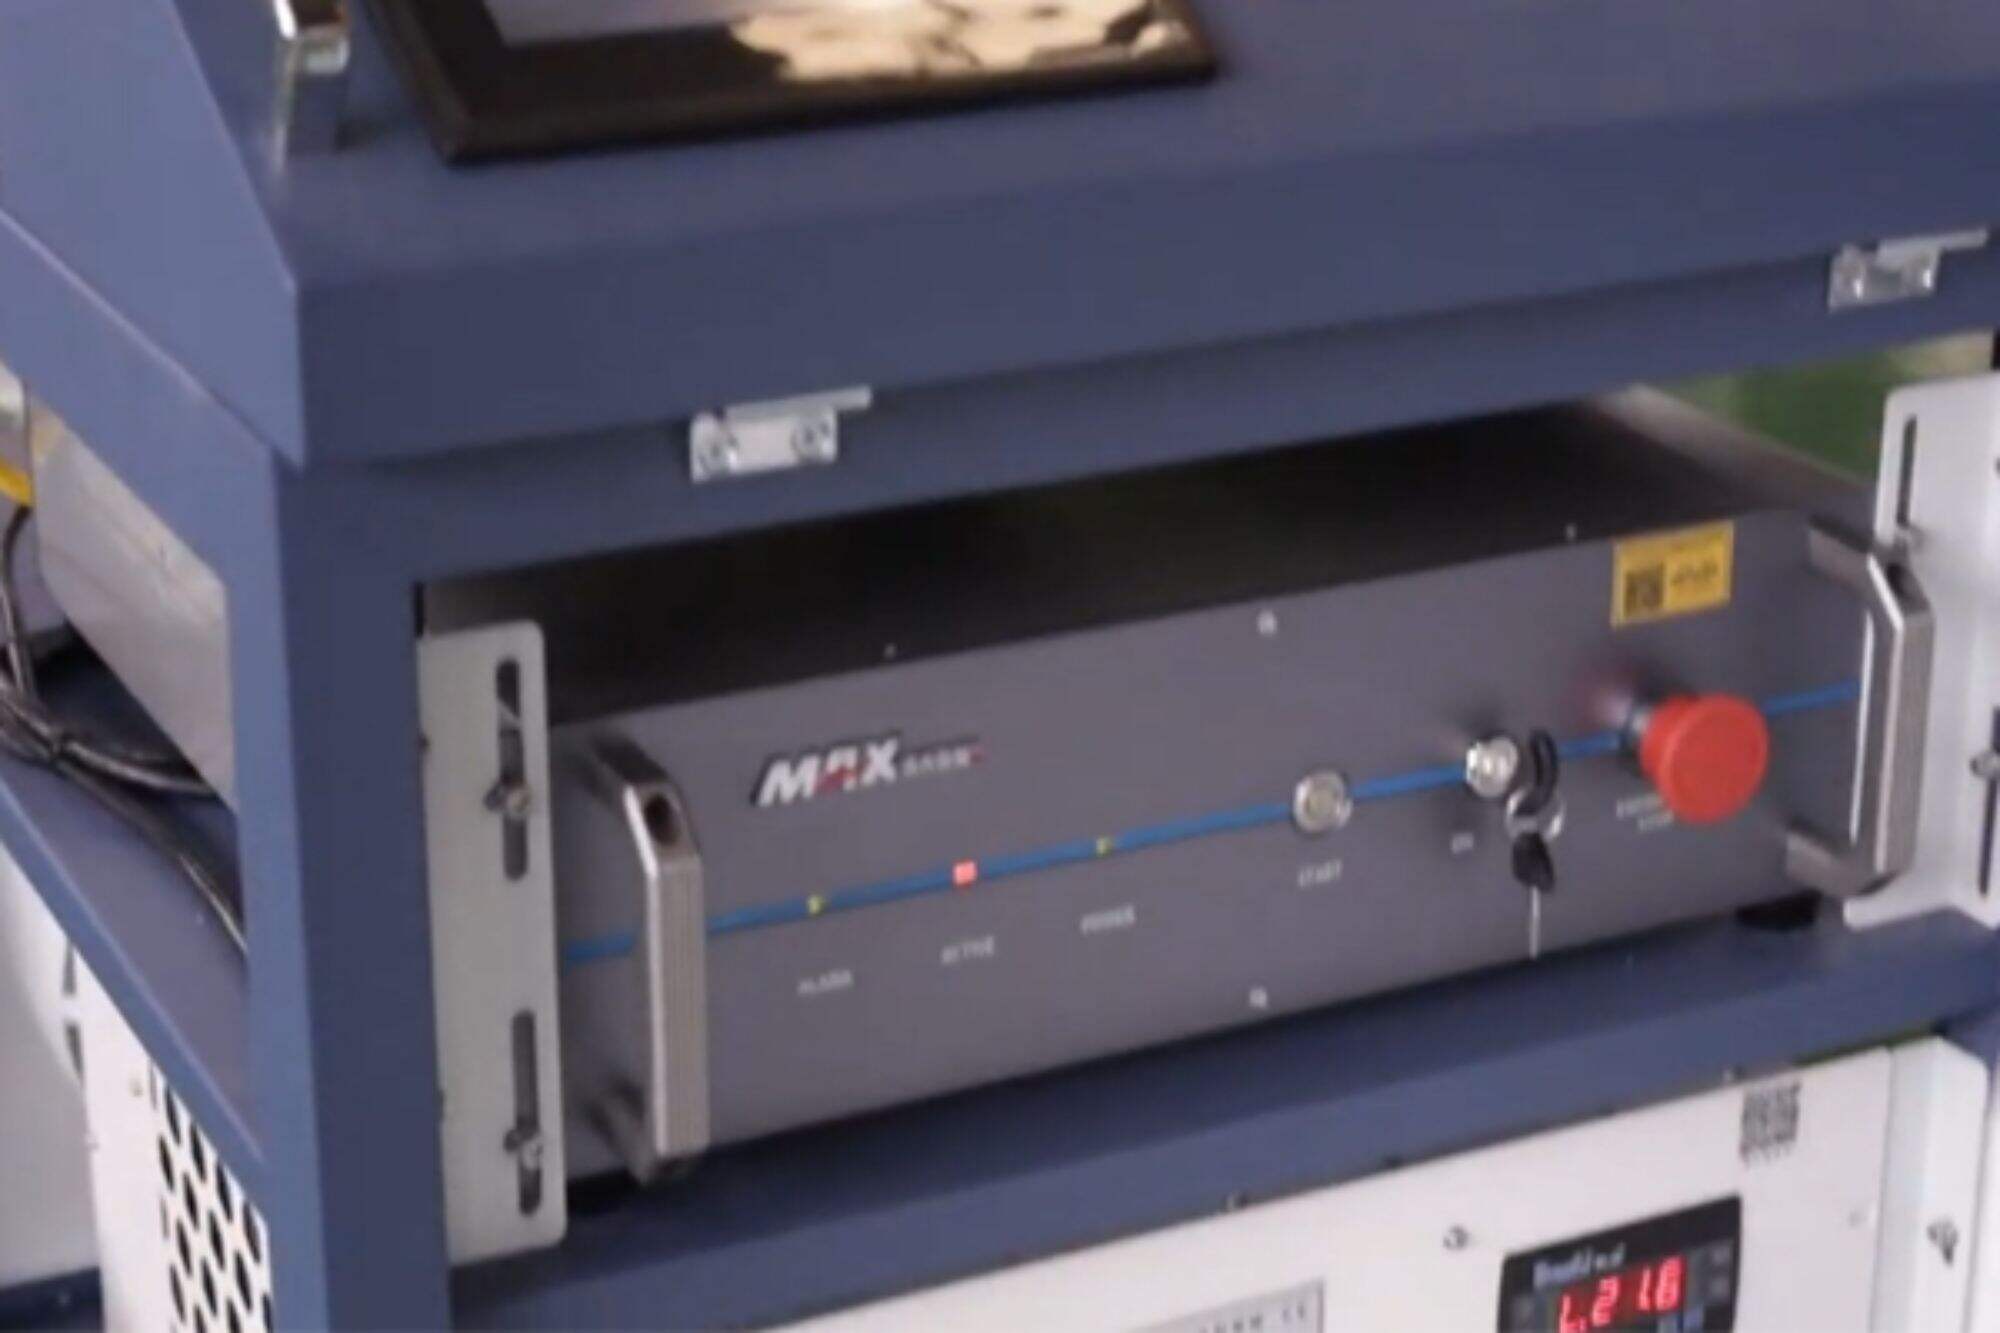 Máquina de limpeza a laser DMK CW de 2000 W. O equipamento será testado antecipadamente antes do envio